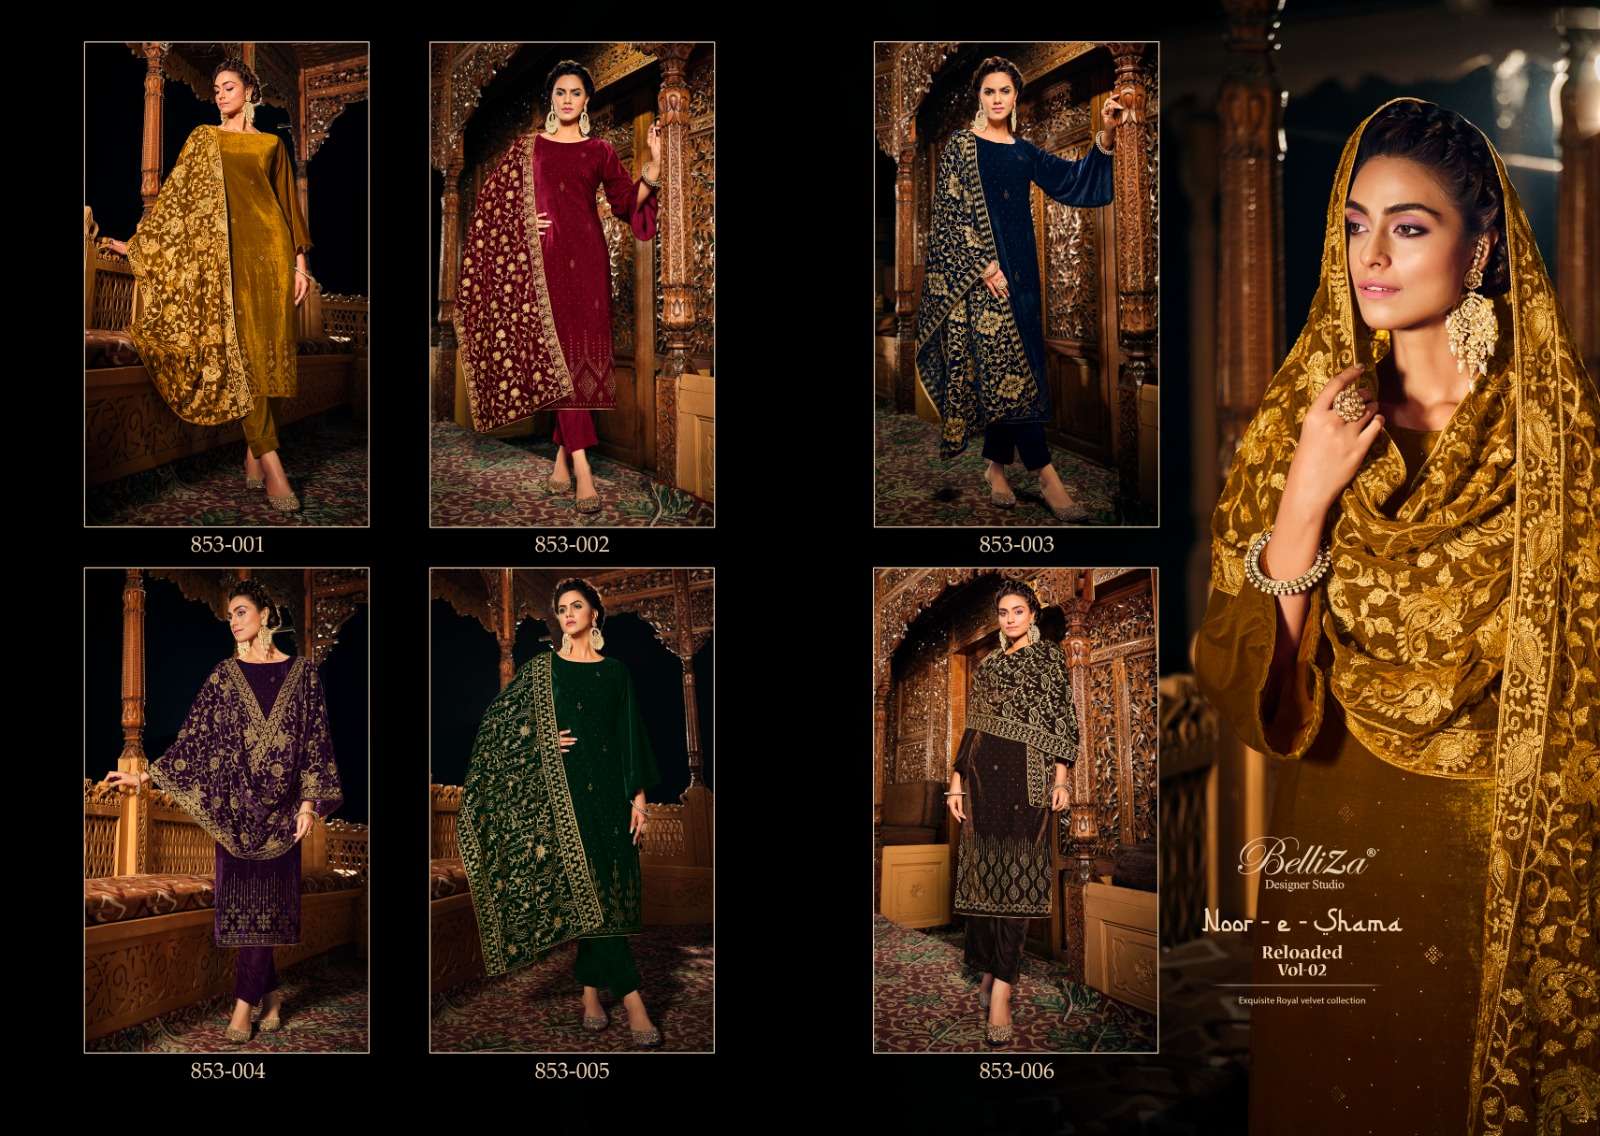 belliza designer studio noor e shama vol 2 velvet decent look salwar suit catalog